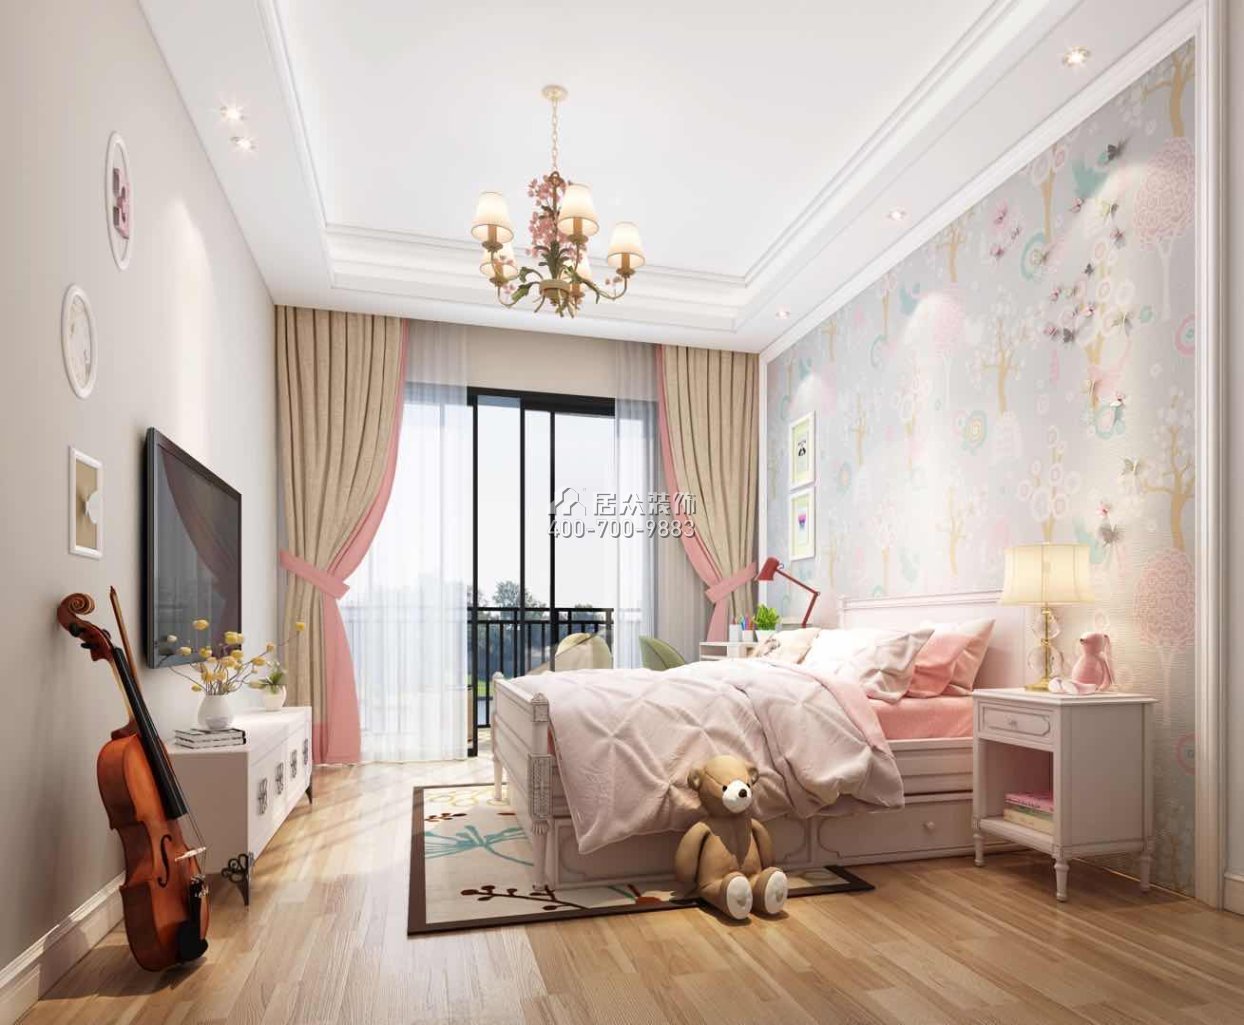 万科棠樾500平方米中式风格别墅户型卧室装修效果图